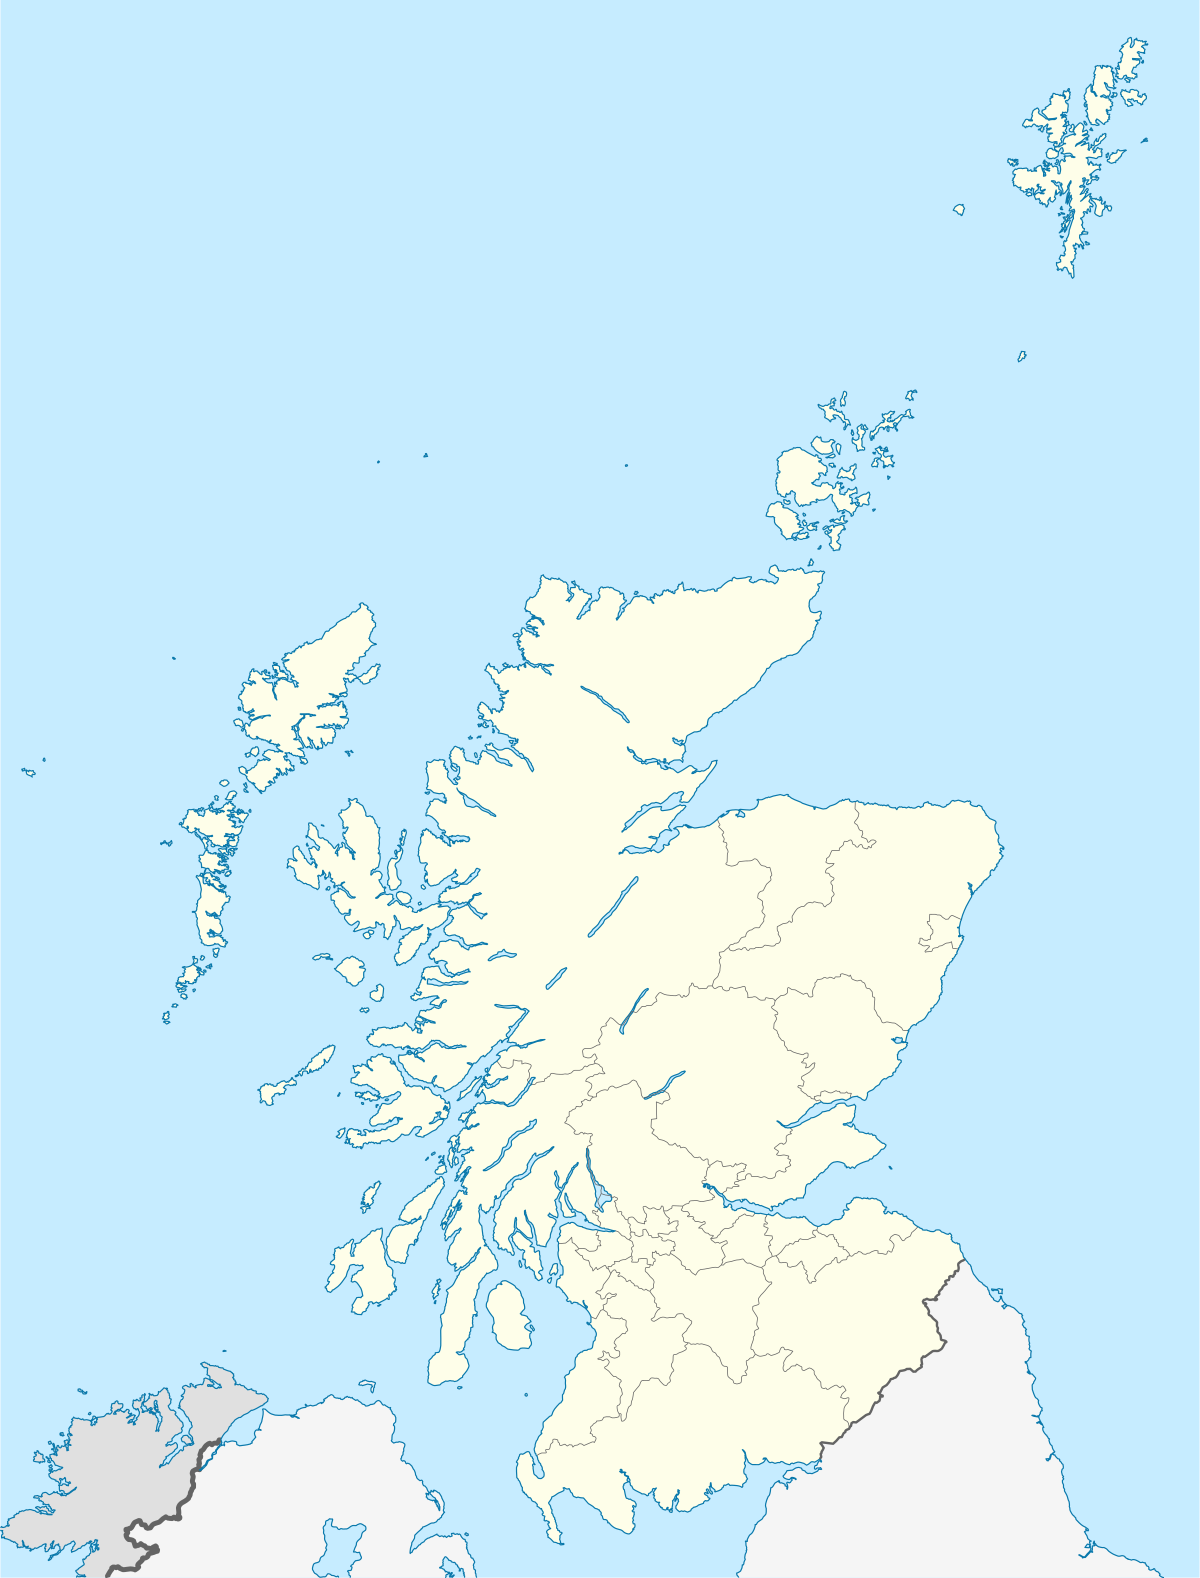 Voir sur la carte : Écosse